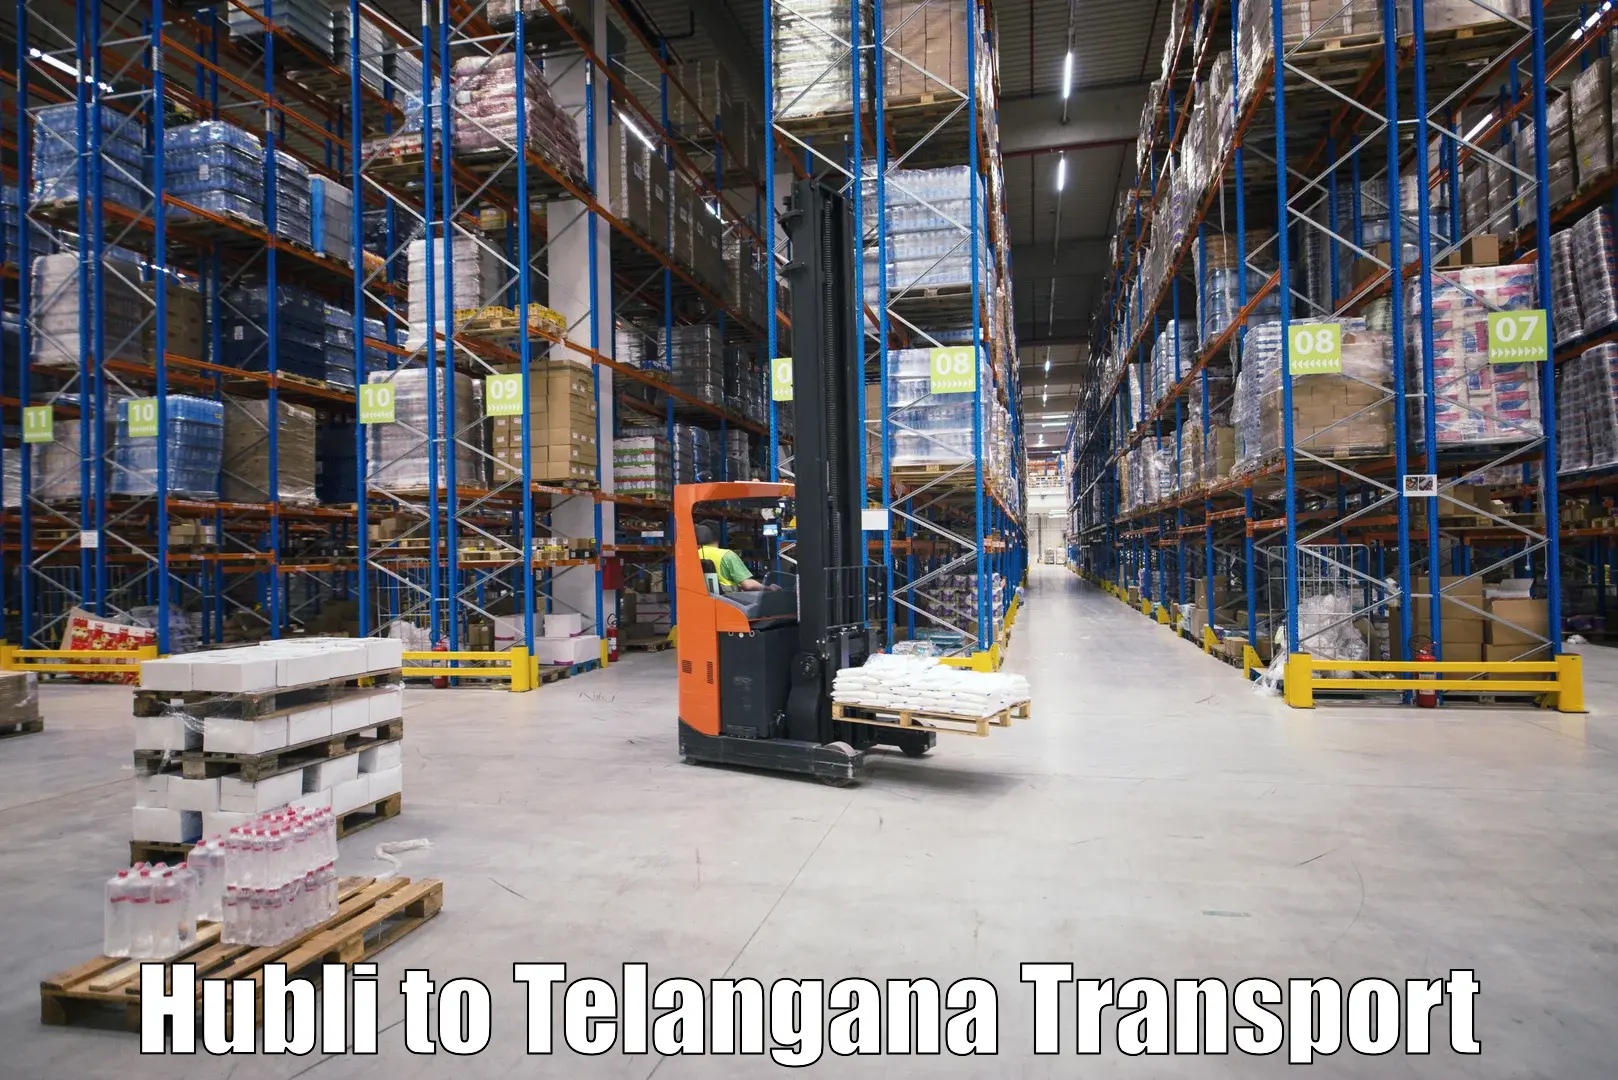 Cargo transport services Hubli to Wanaparthy